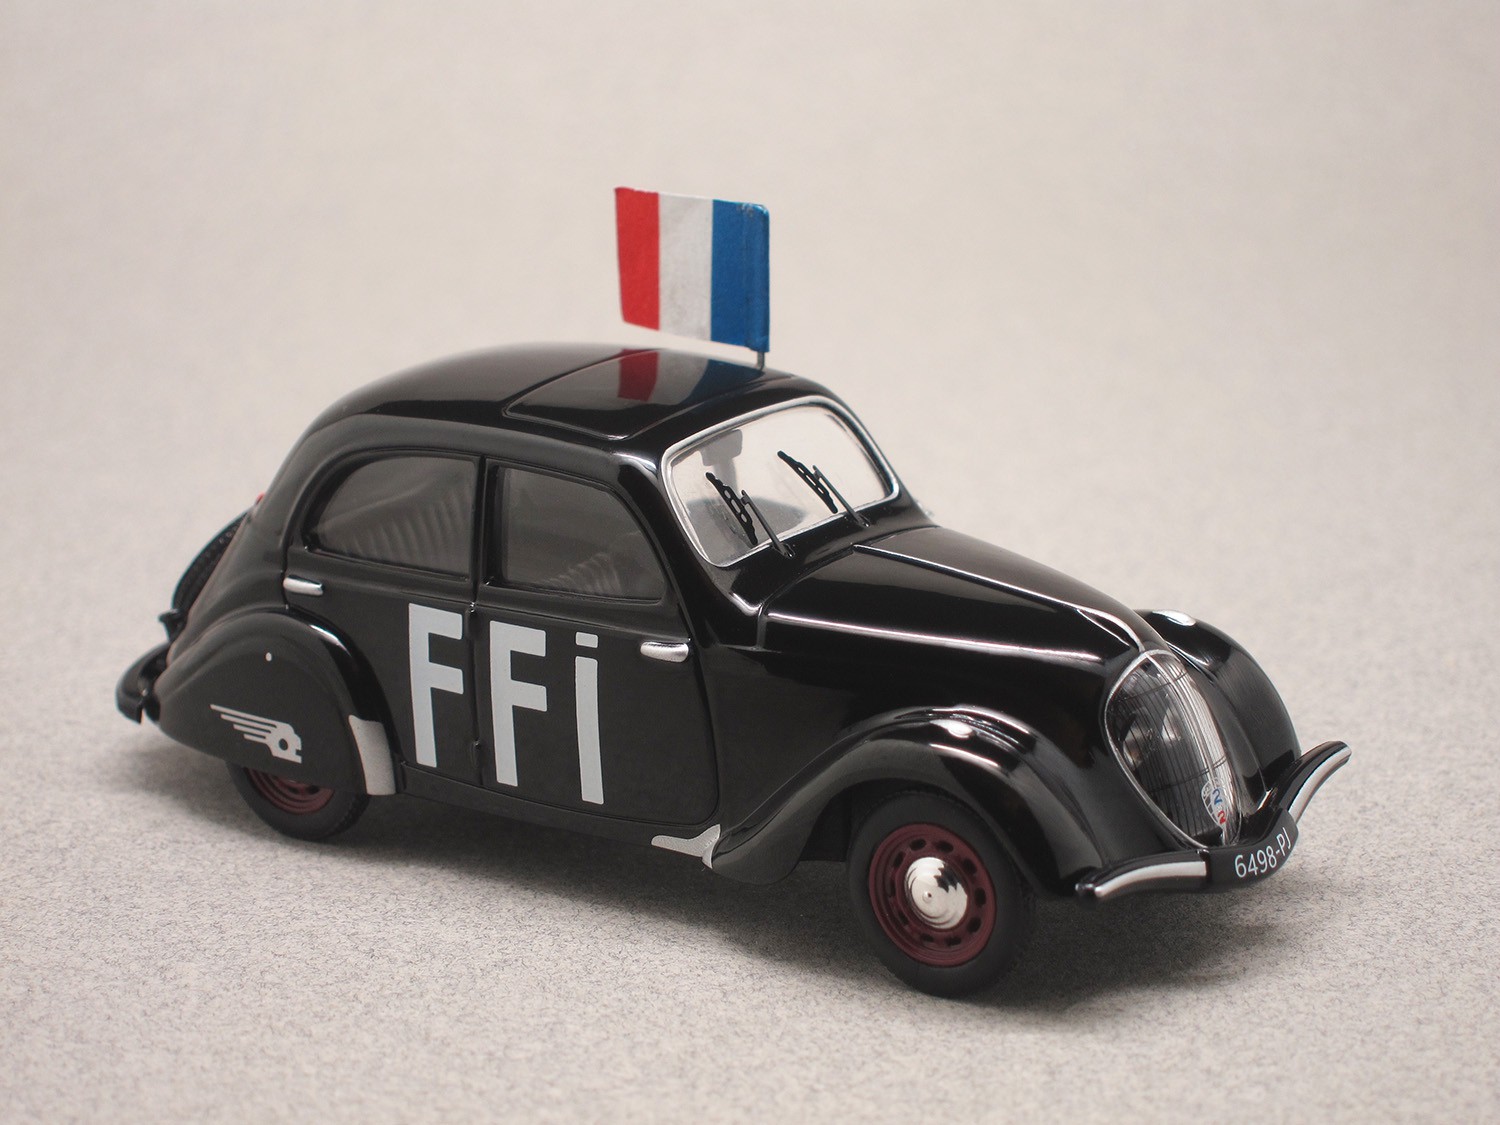 Peugeot 202 FFI (Odéon) 1/43e